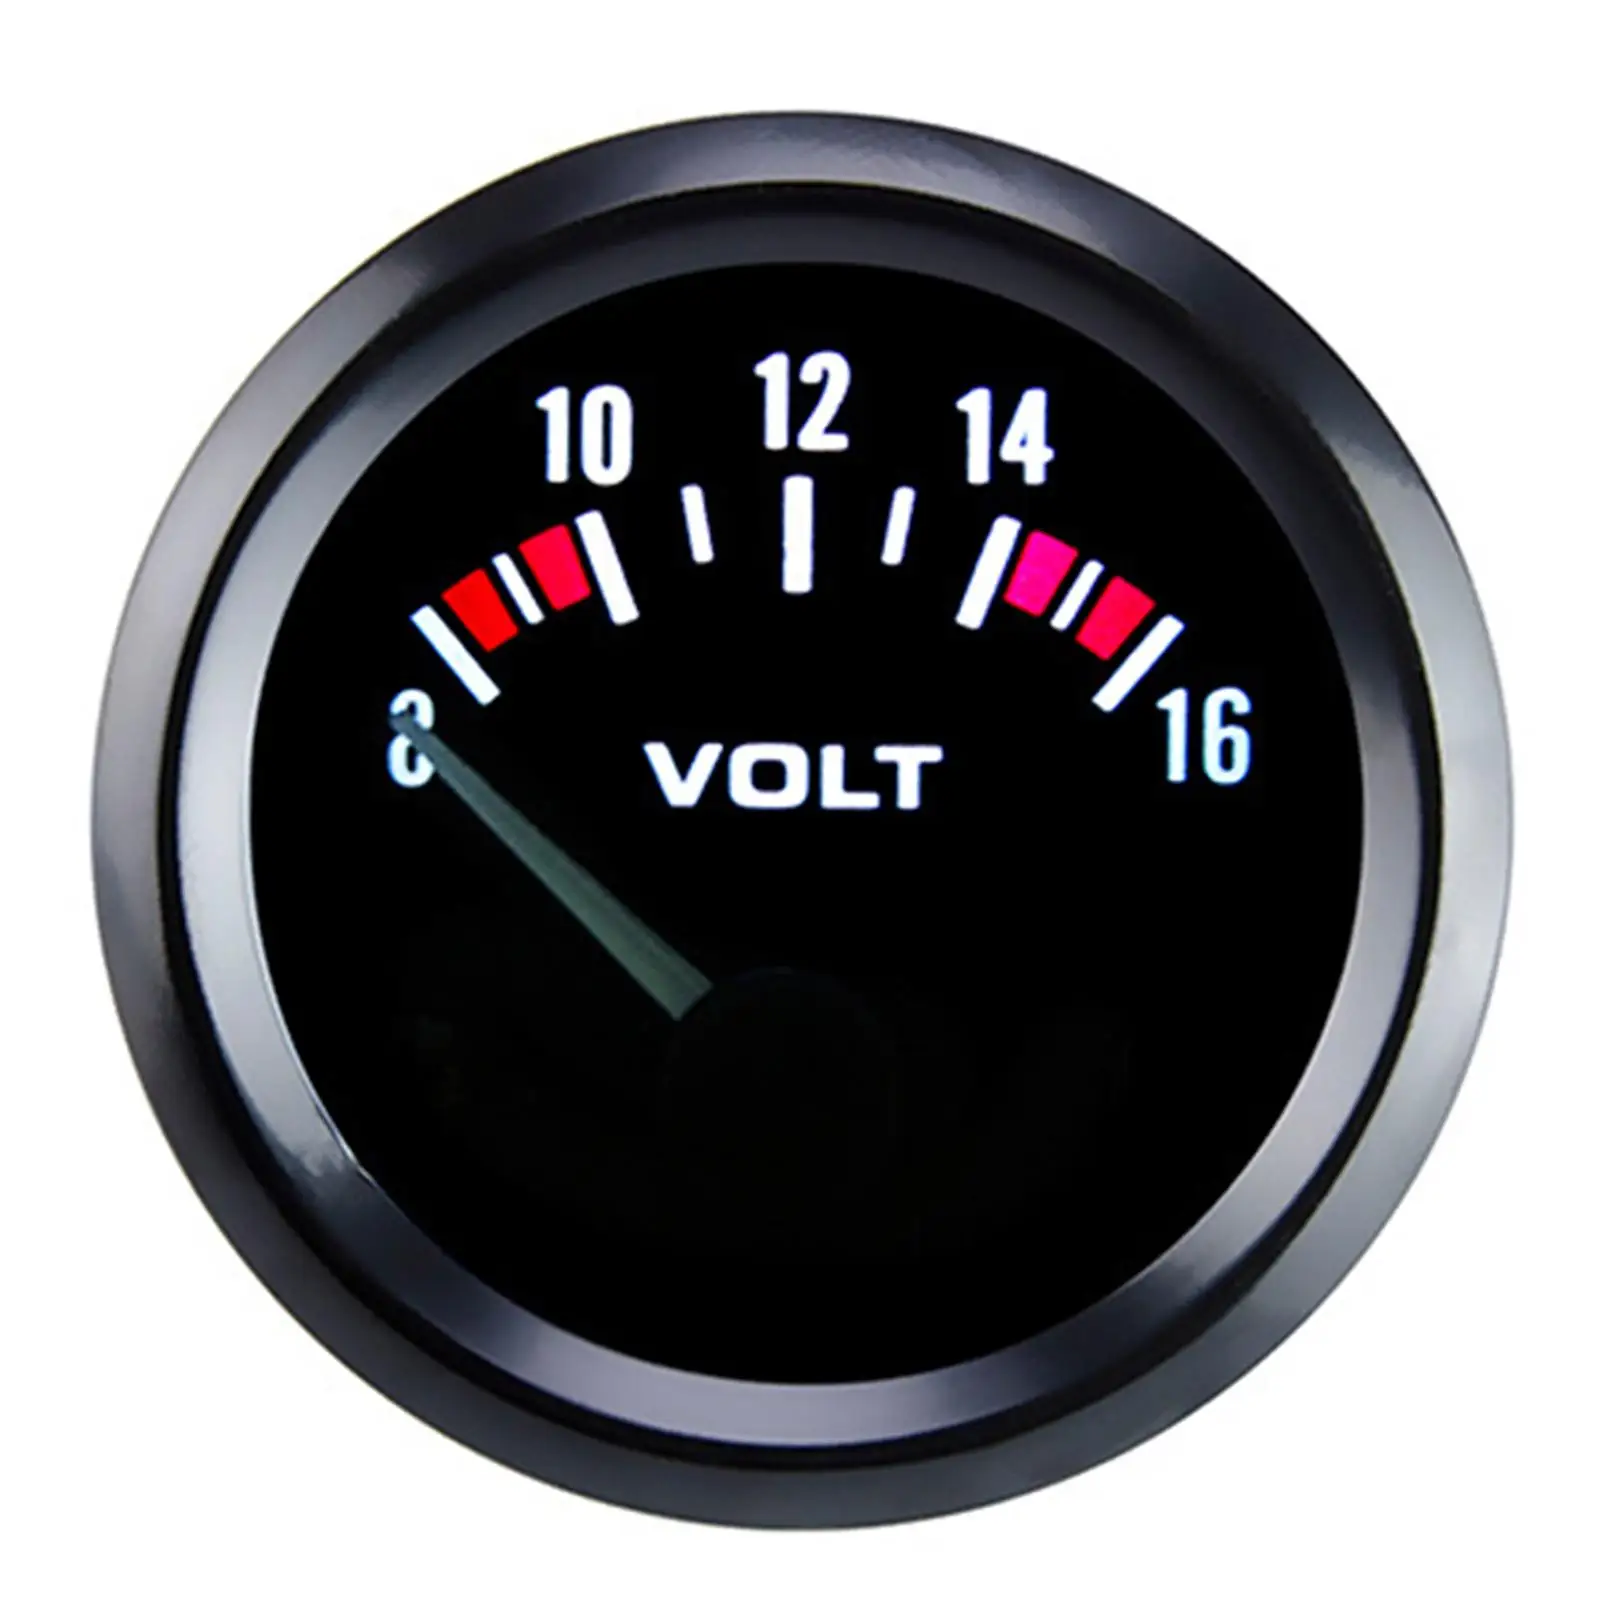 Car Voltmeter Measure Range 8-16 V Voltage Gauge for Vehicle